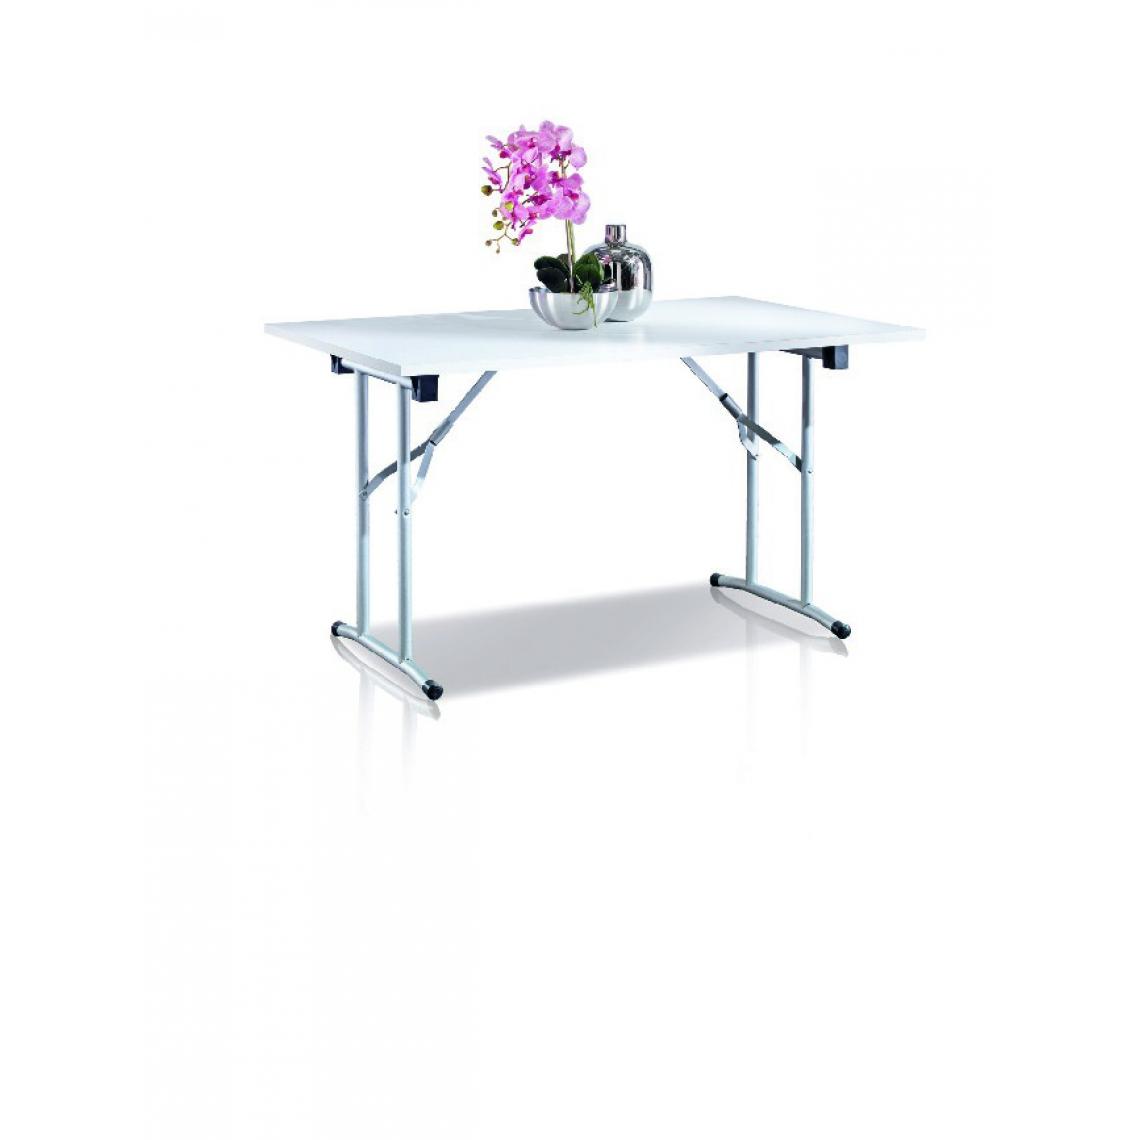 Homemania - Table Camp - Table d'appoint, pliante - Salon, Cuisine - Blanc en Panneau de particules de mélamine, 125 x 75 x 80 cm - Tables basses